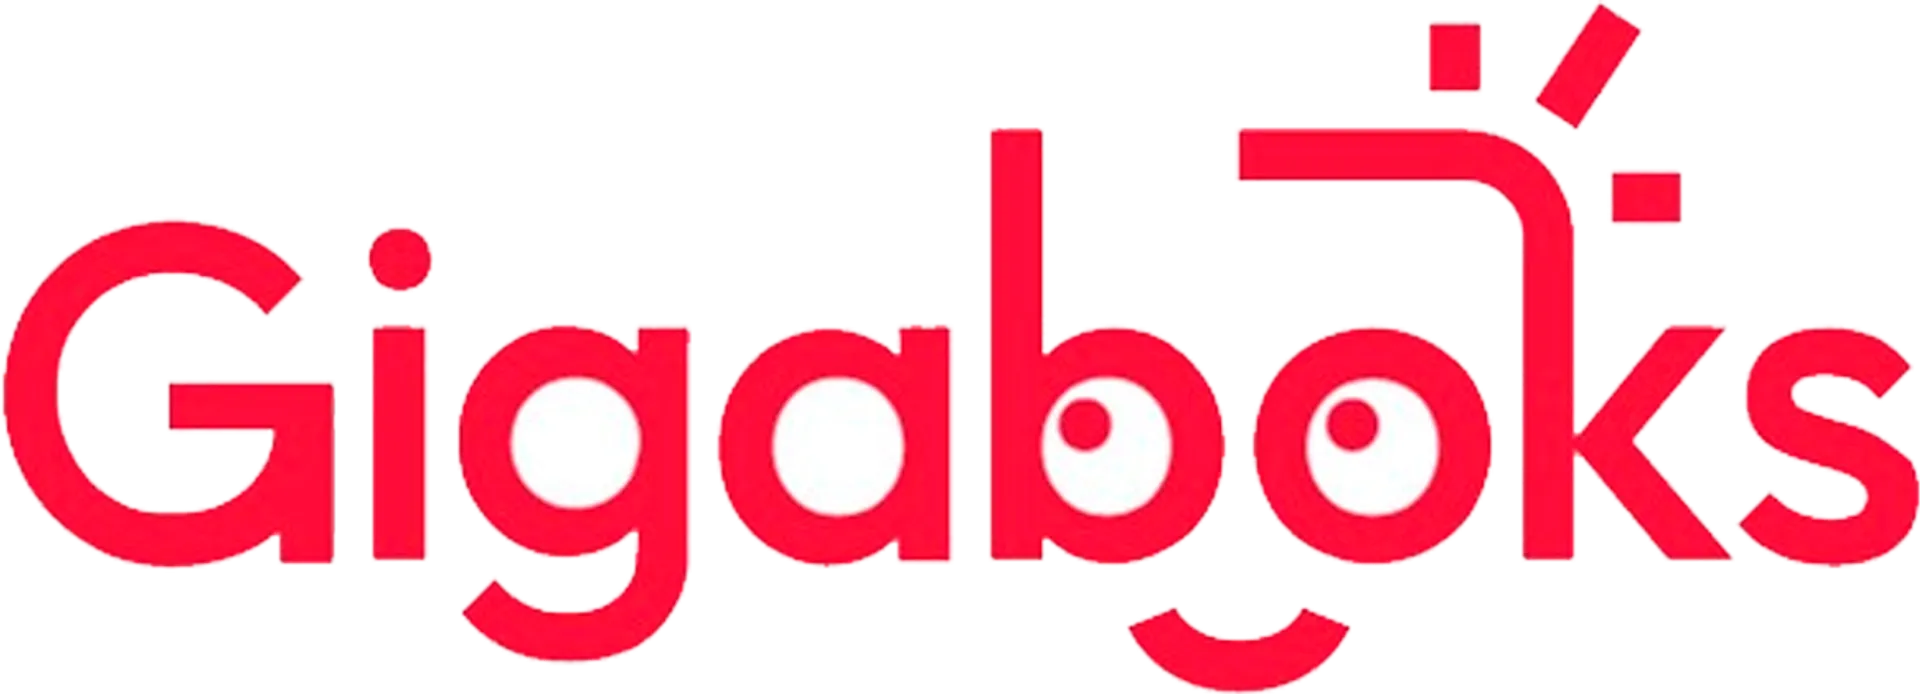 GIGABOKS logo